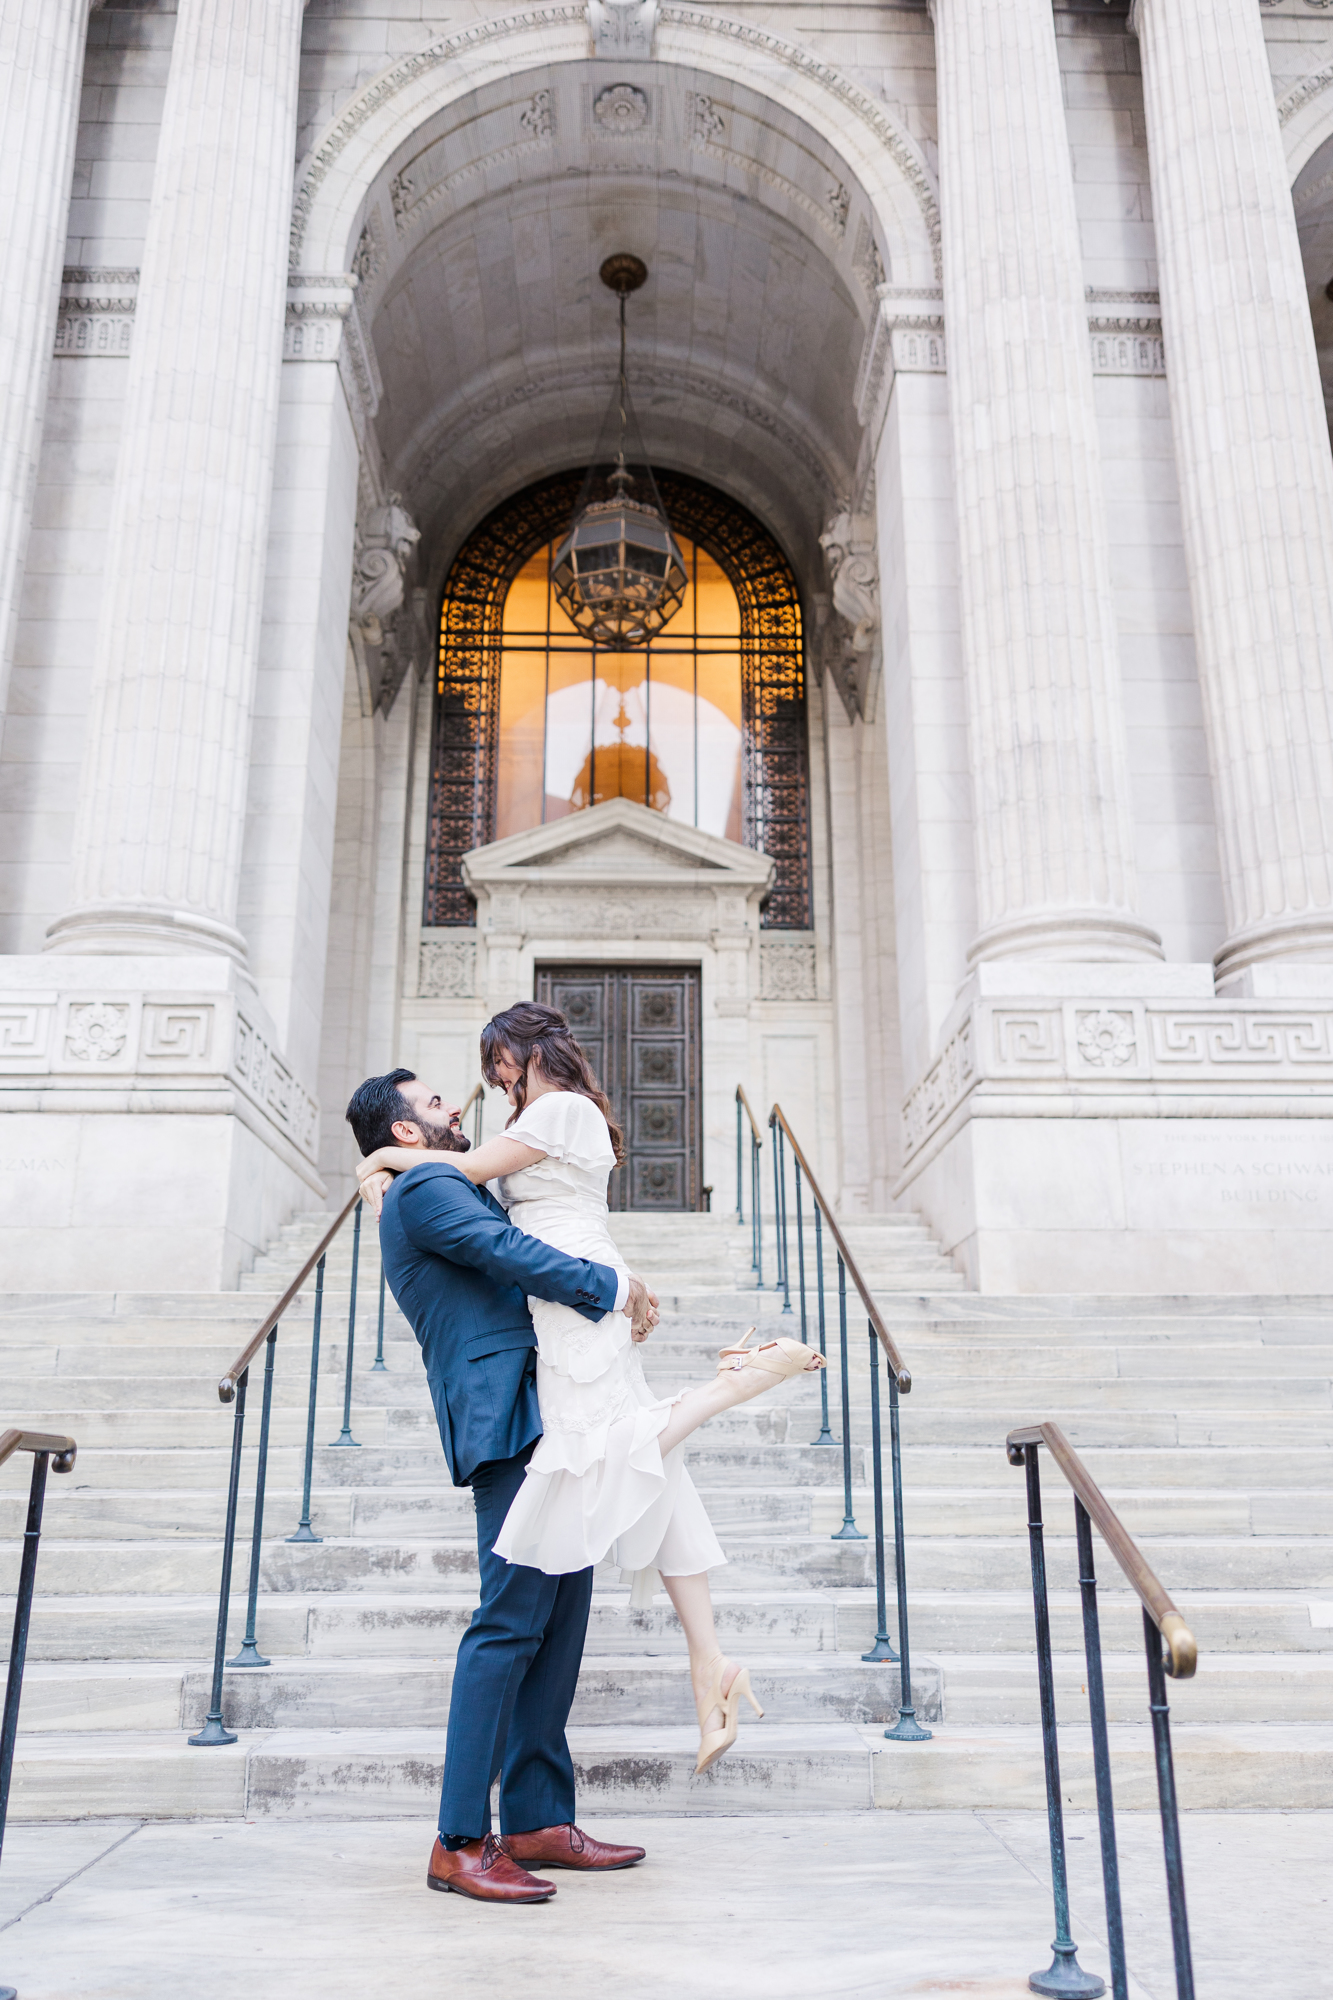 Incredible New York wedding photographers